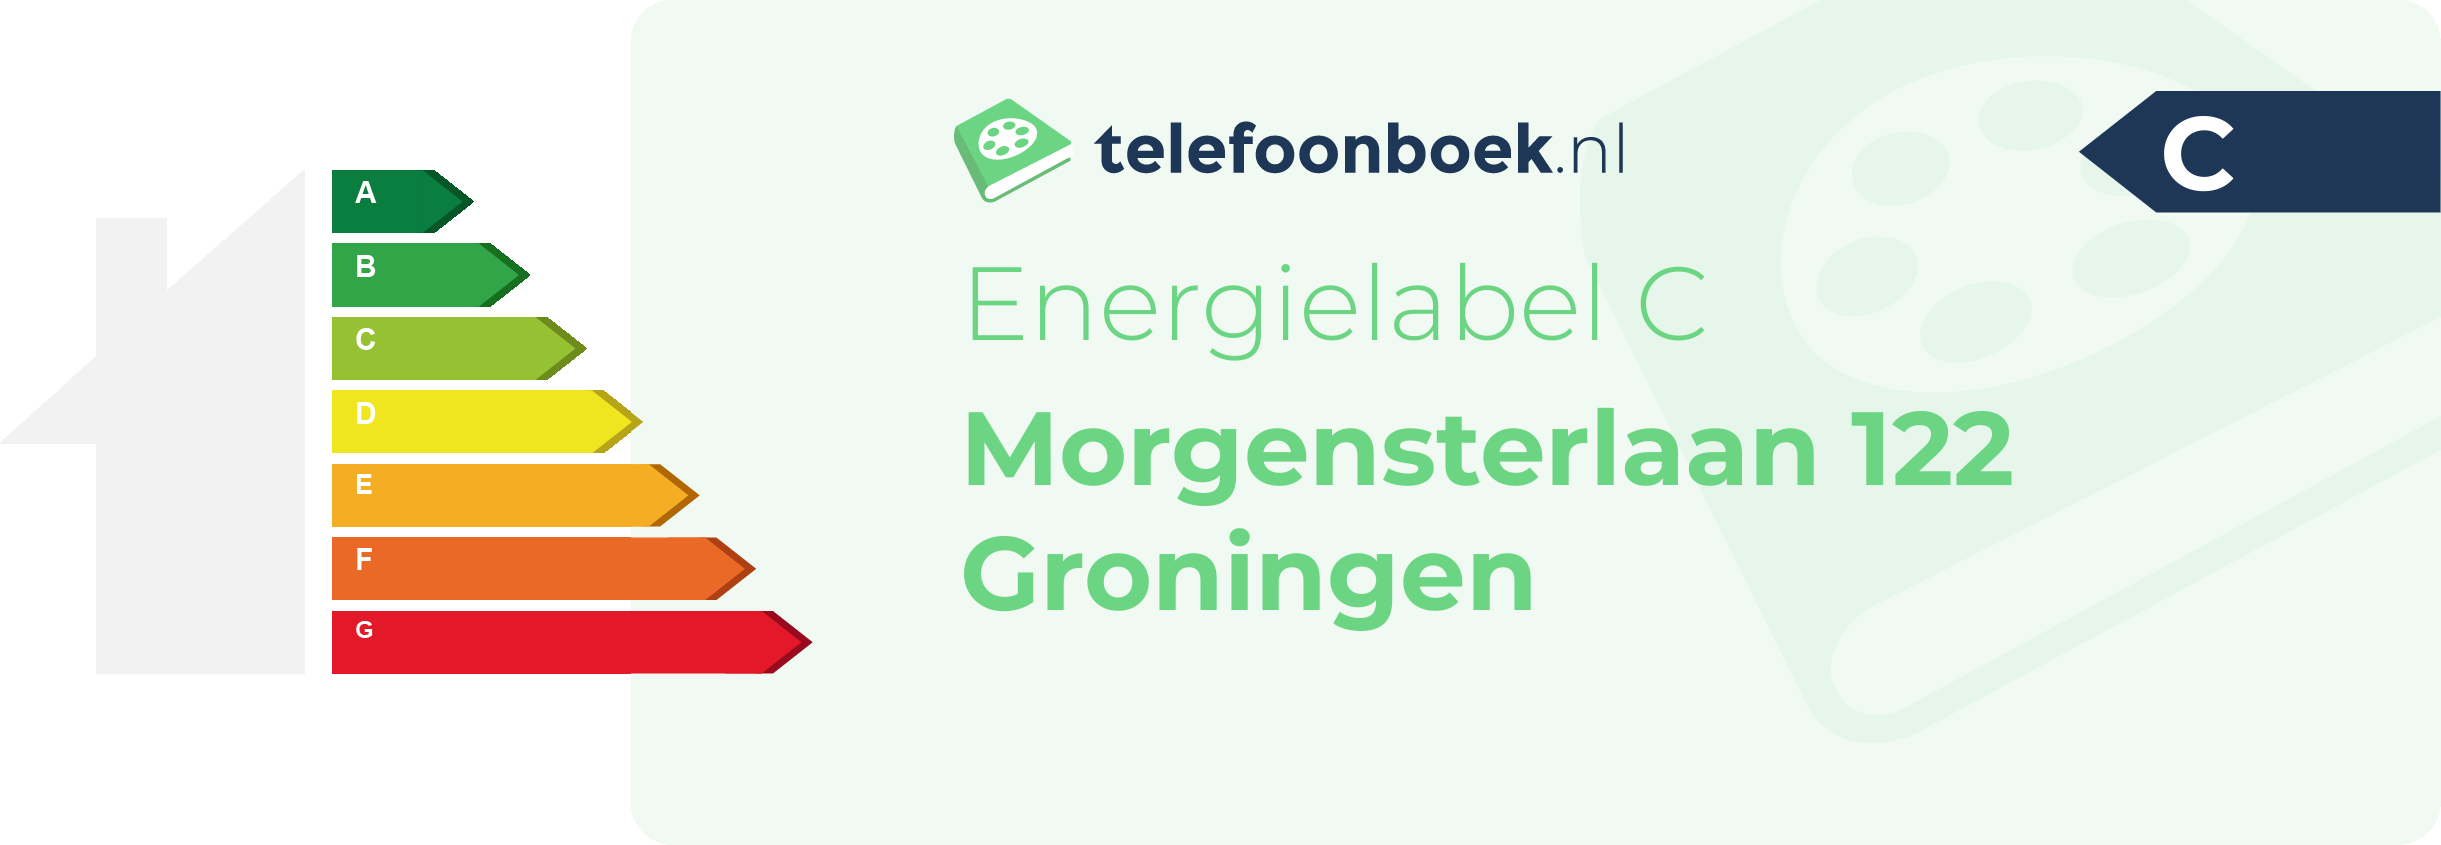 Energielabel Morgensterlaan 122 Groningen